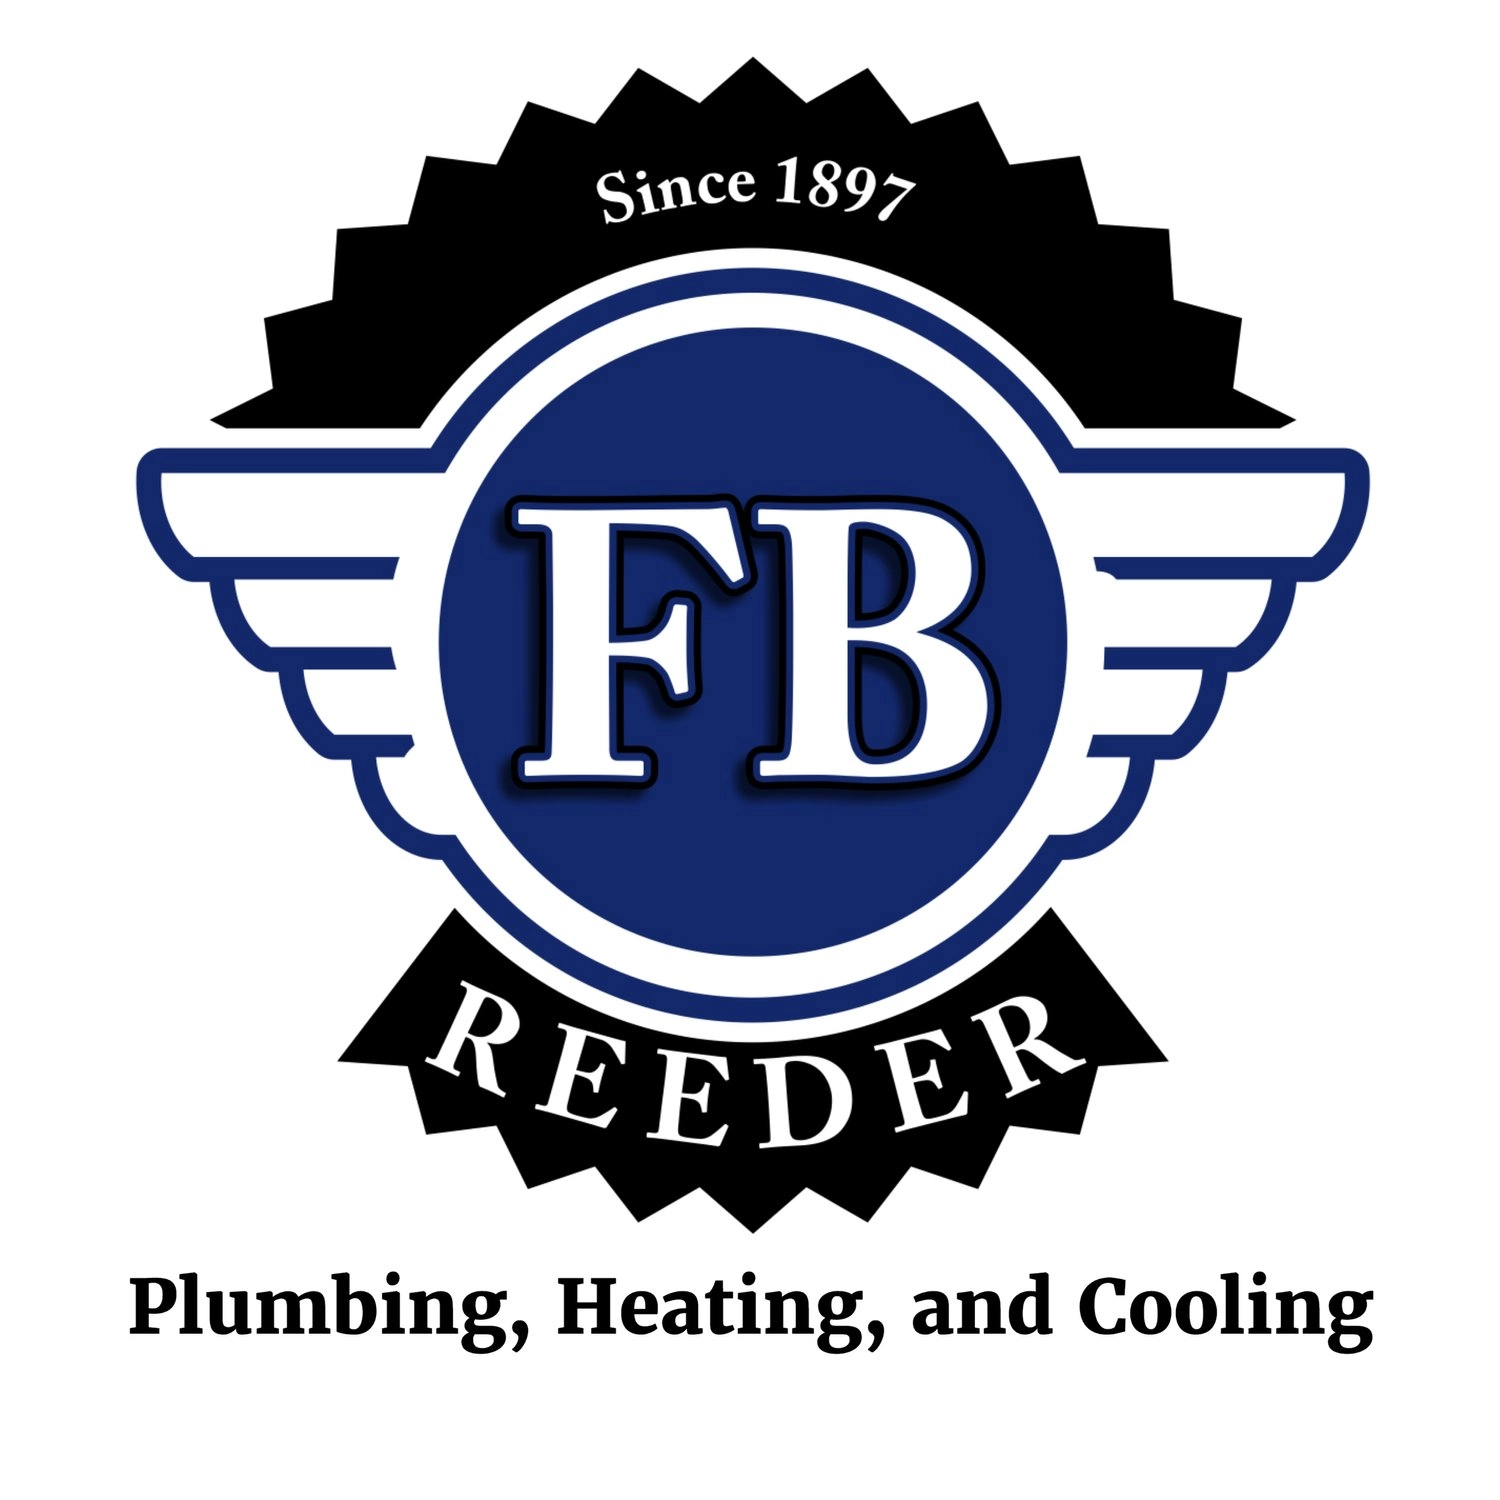 FB Reeder Plumbing, Heating & Cooling Logo